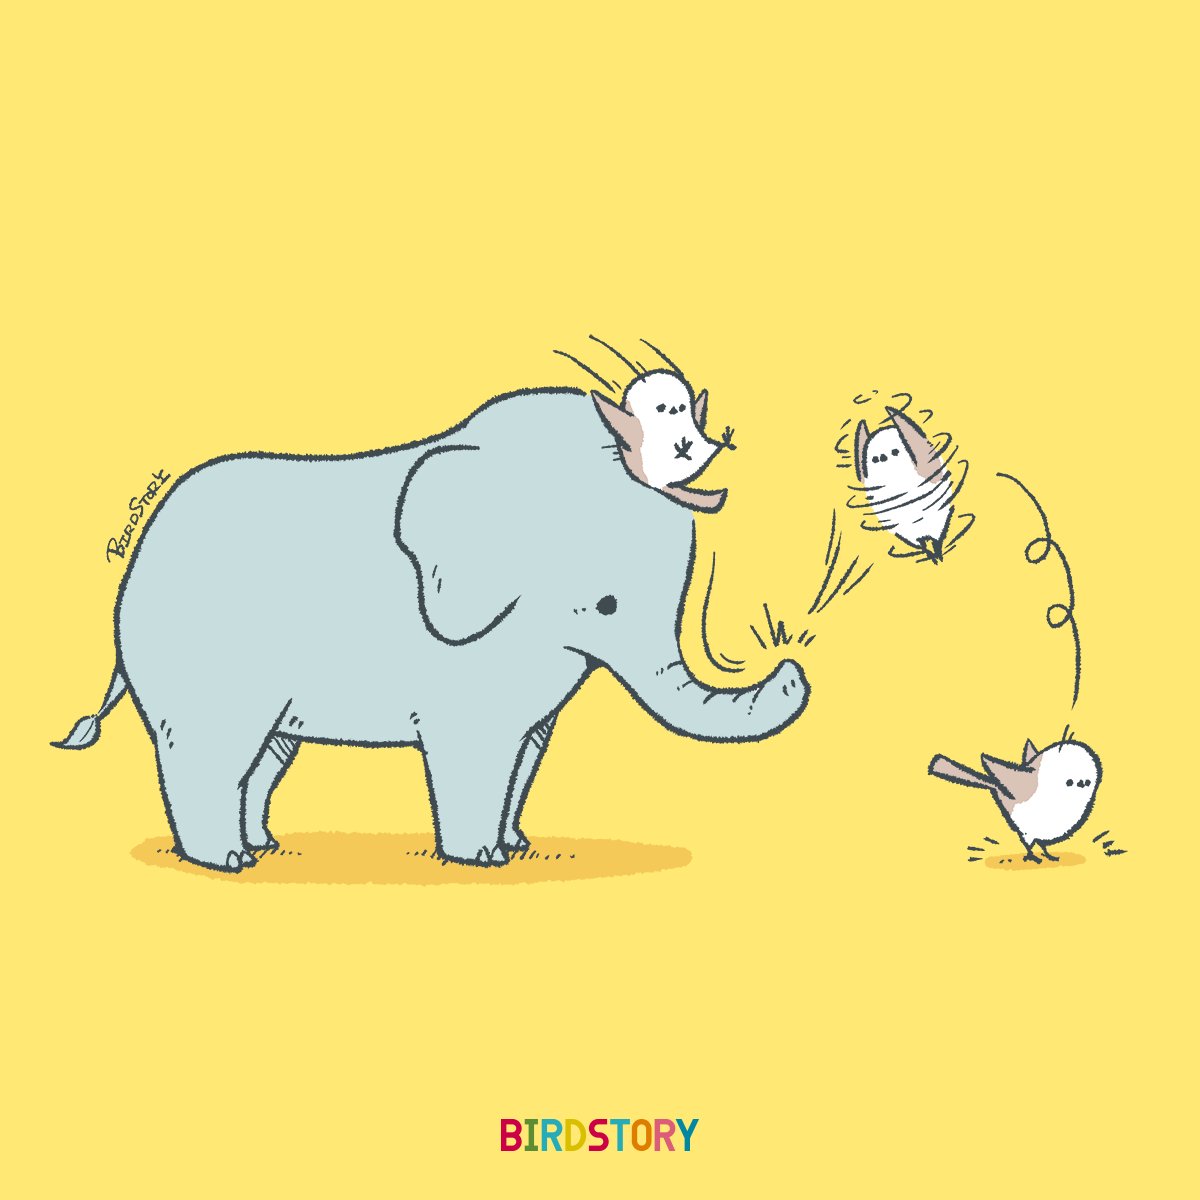 「おはようございます。 本日は4月28日、象の日とのことです #BIRDSTORY」|BIRDSTORYのイラスト